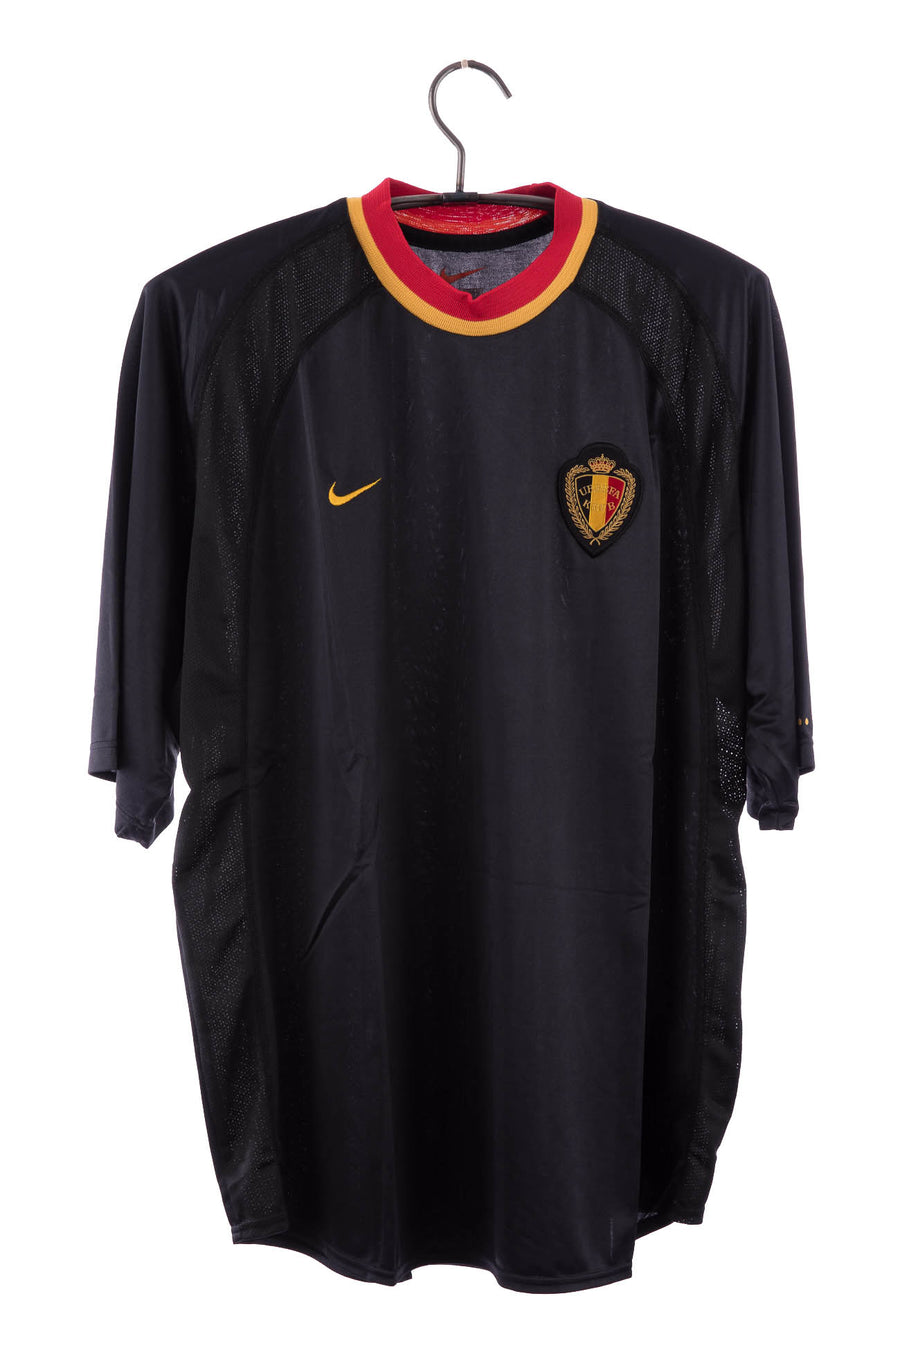 Belgium 2000 - 2002 Away Football Shirt